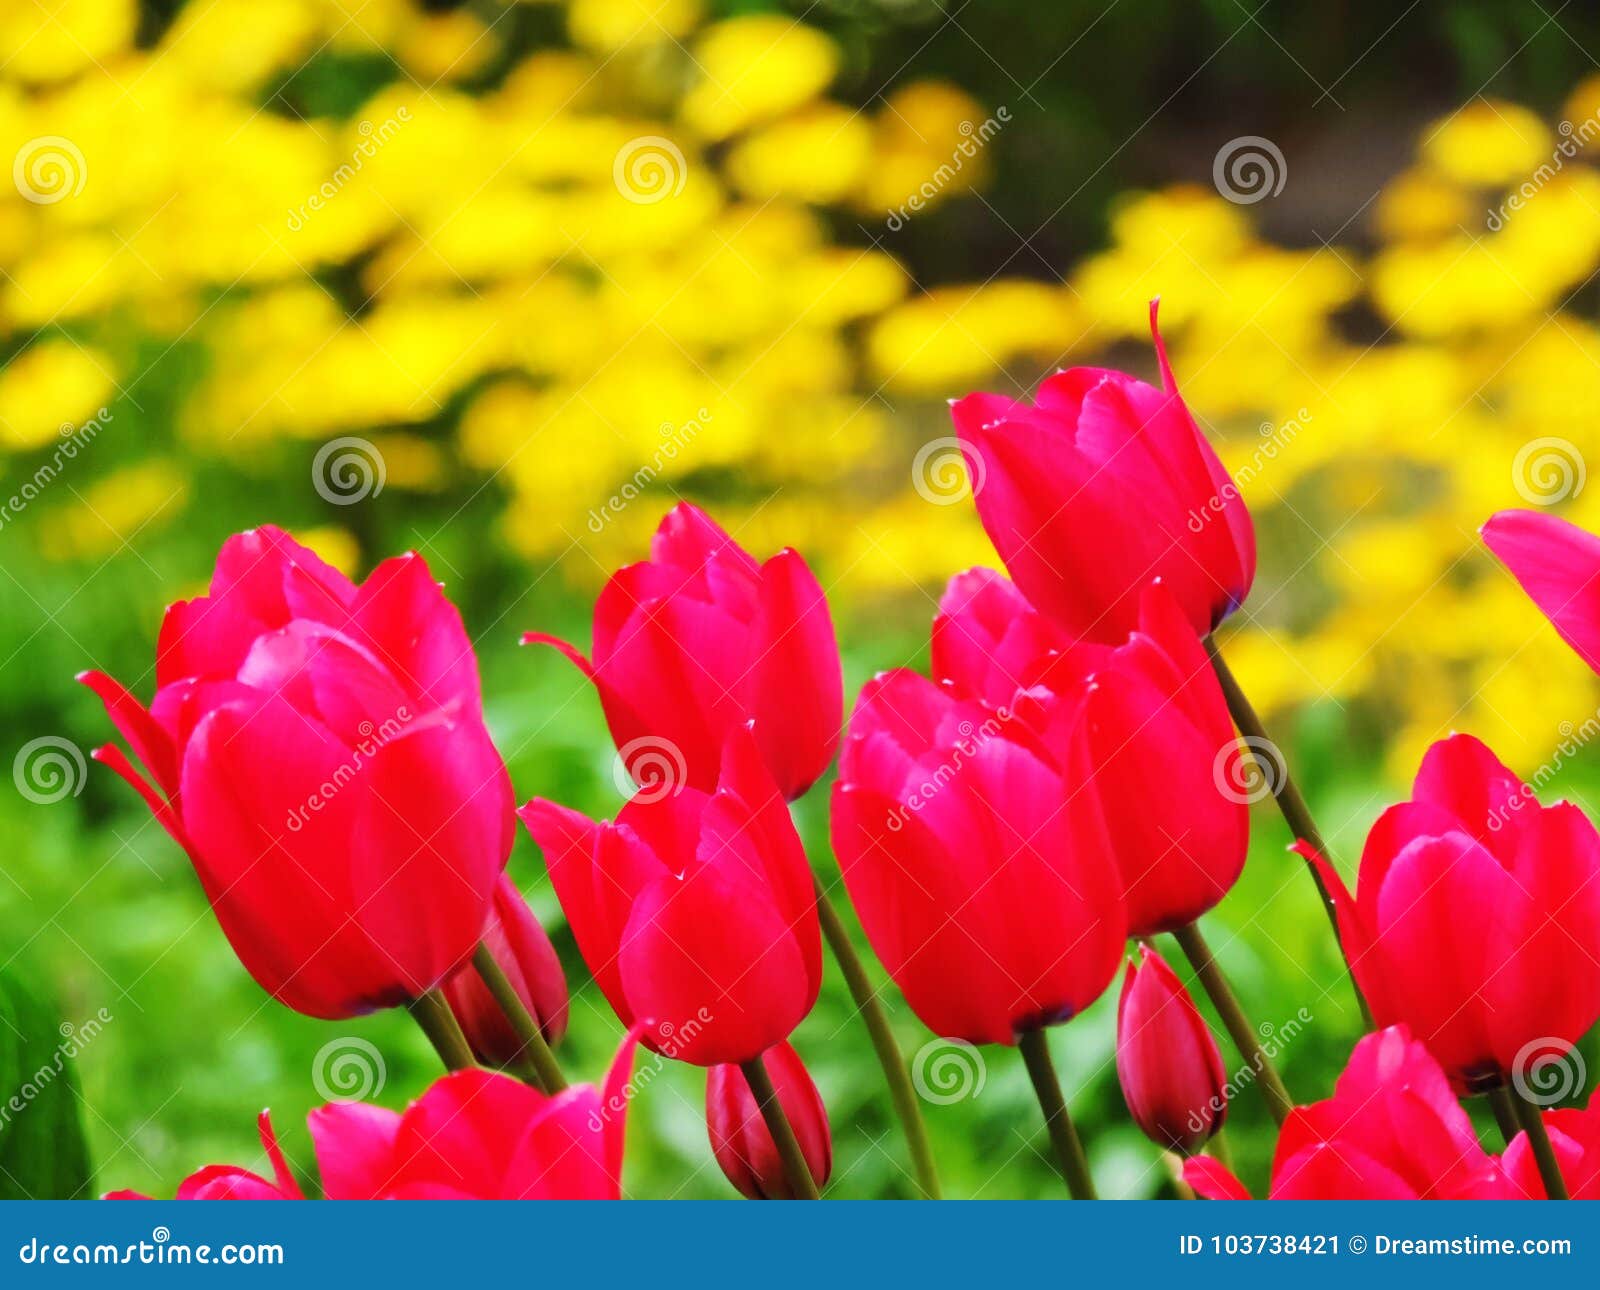 red tulipan flowers in garden